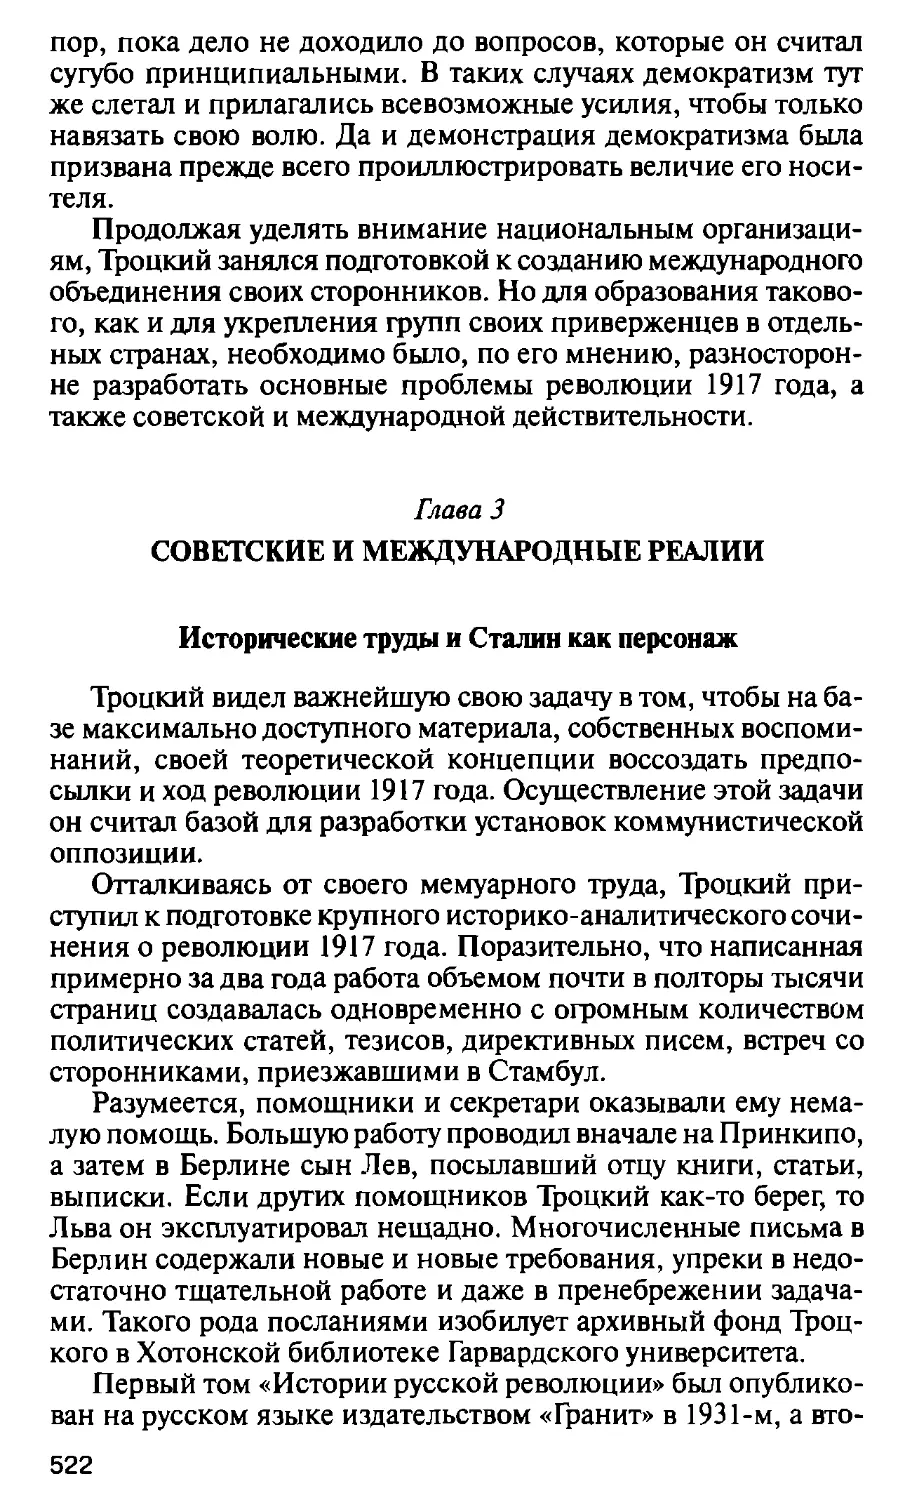 Глава 3. Советские и международные реалии